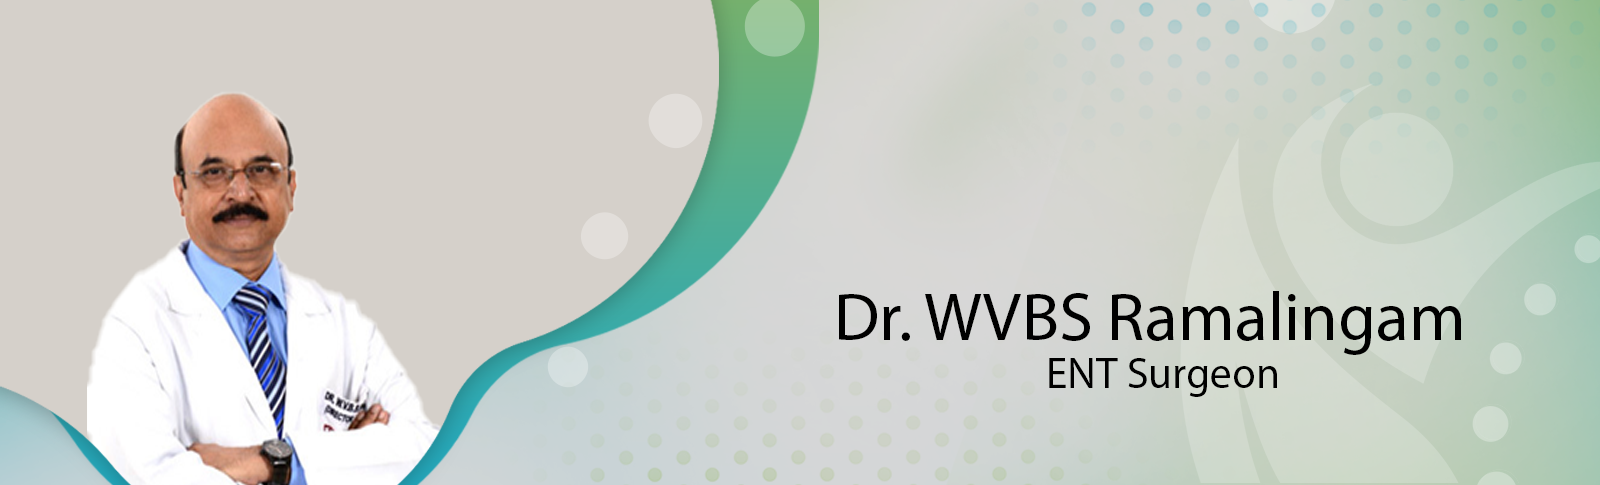 Dr. WVBS Ramalingam